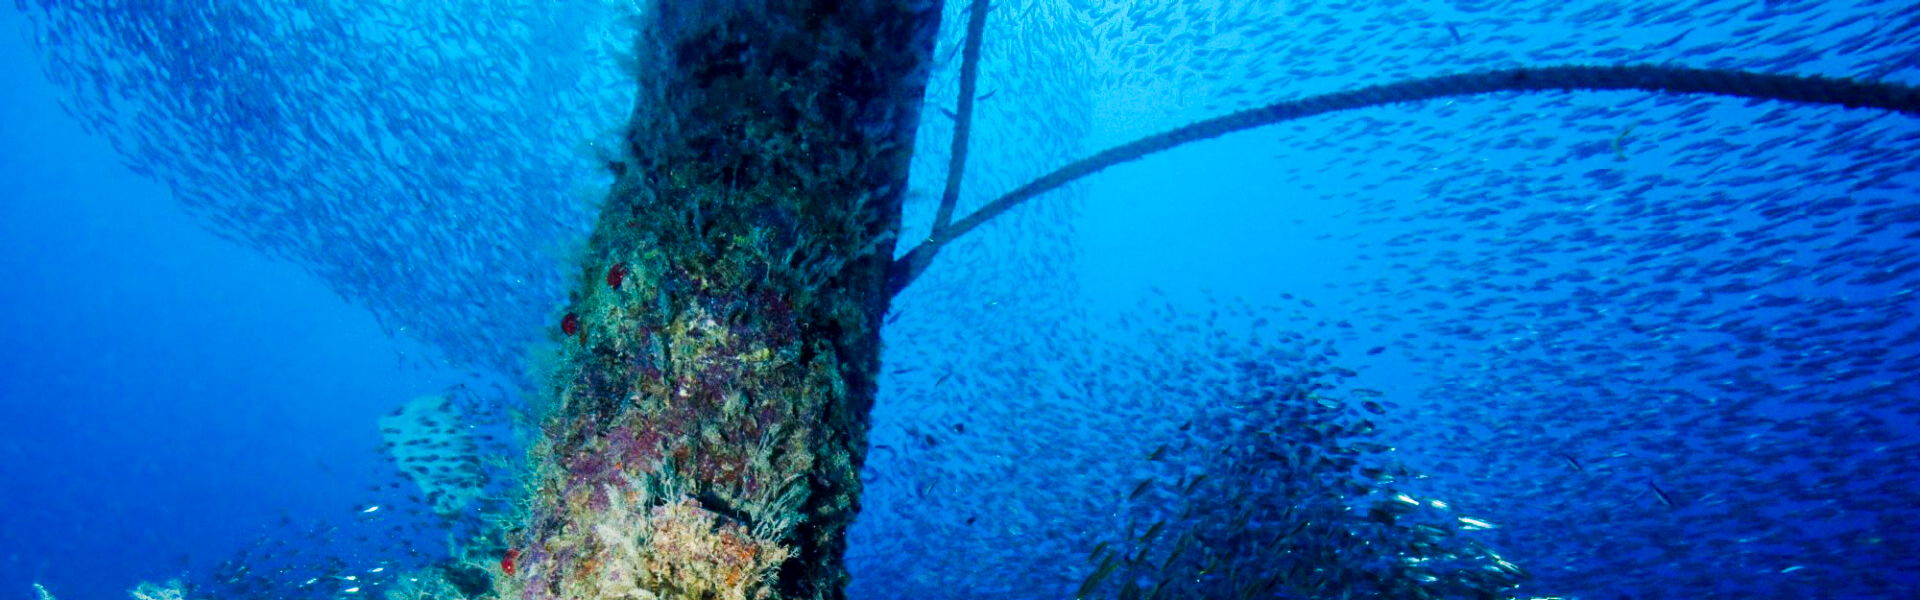 Wreck Diving In Egypt ; Strait of Gubal